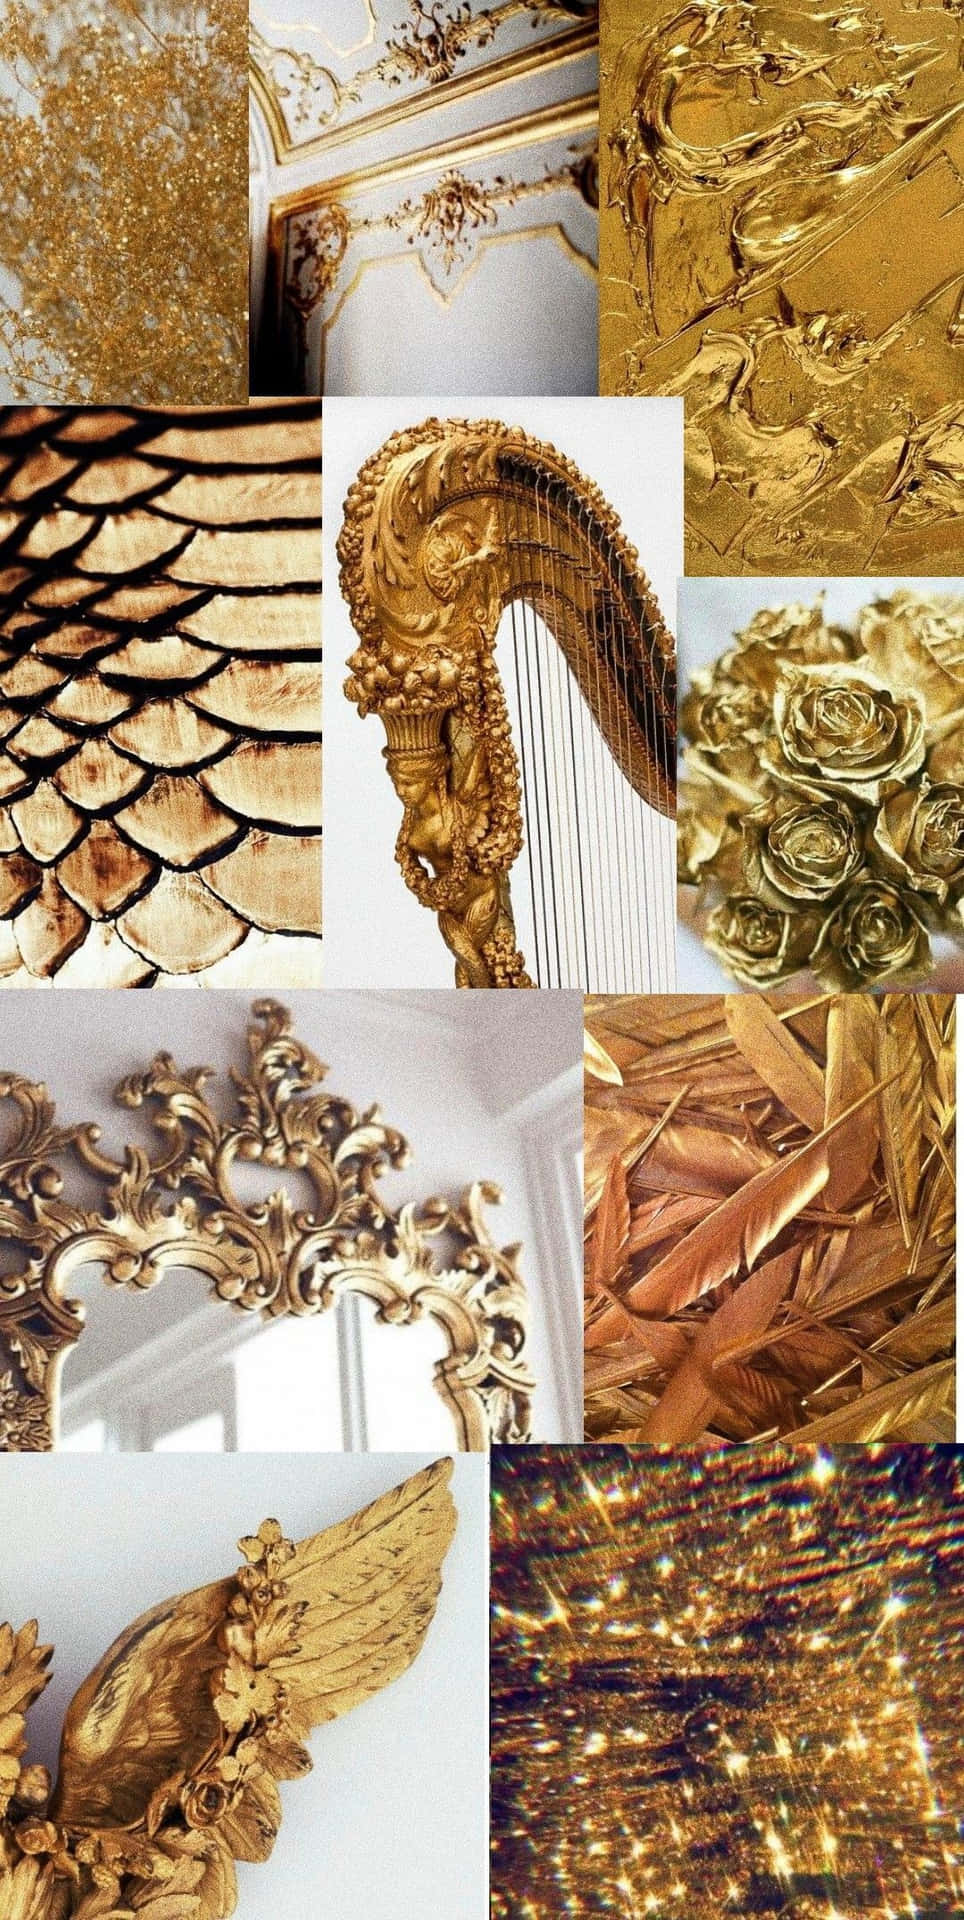 Goldeneharfen, Goldene Harfen, Goldene Harfen, Goldene Harfen, Goldene Harfen, Goldene Harfen.